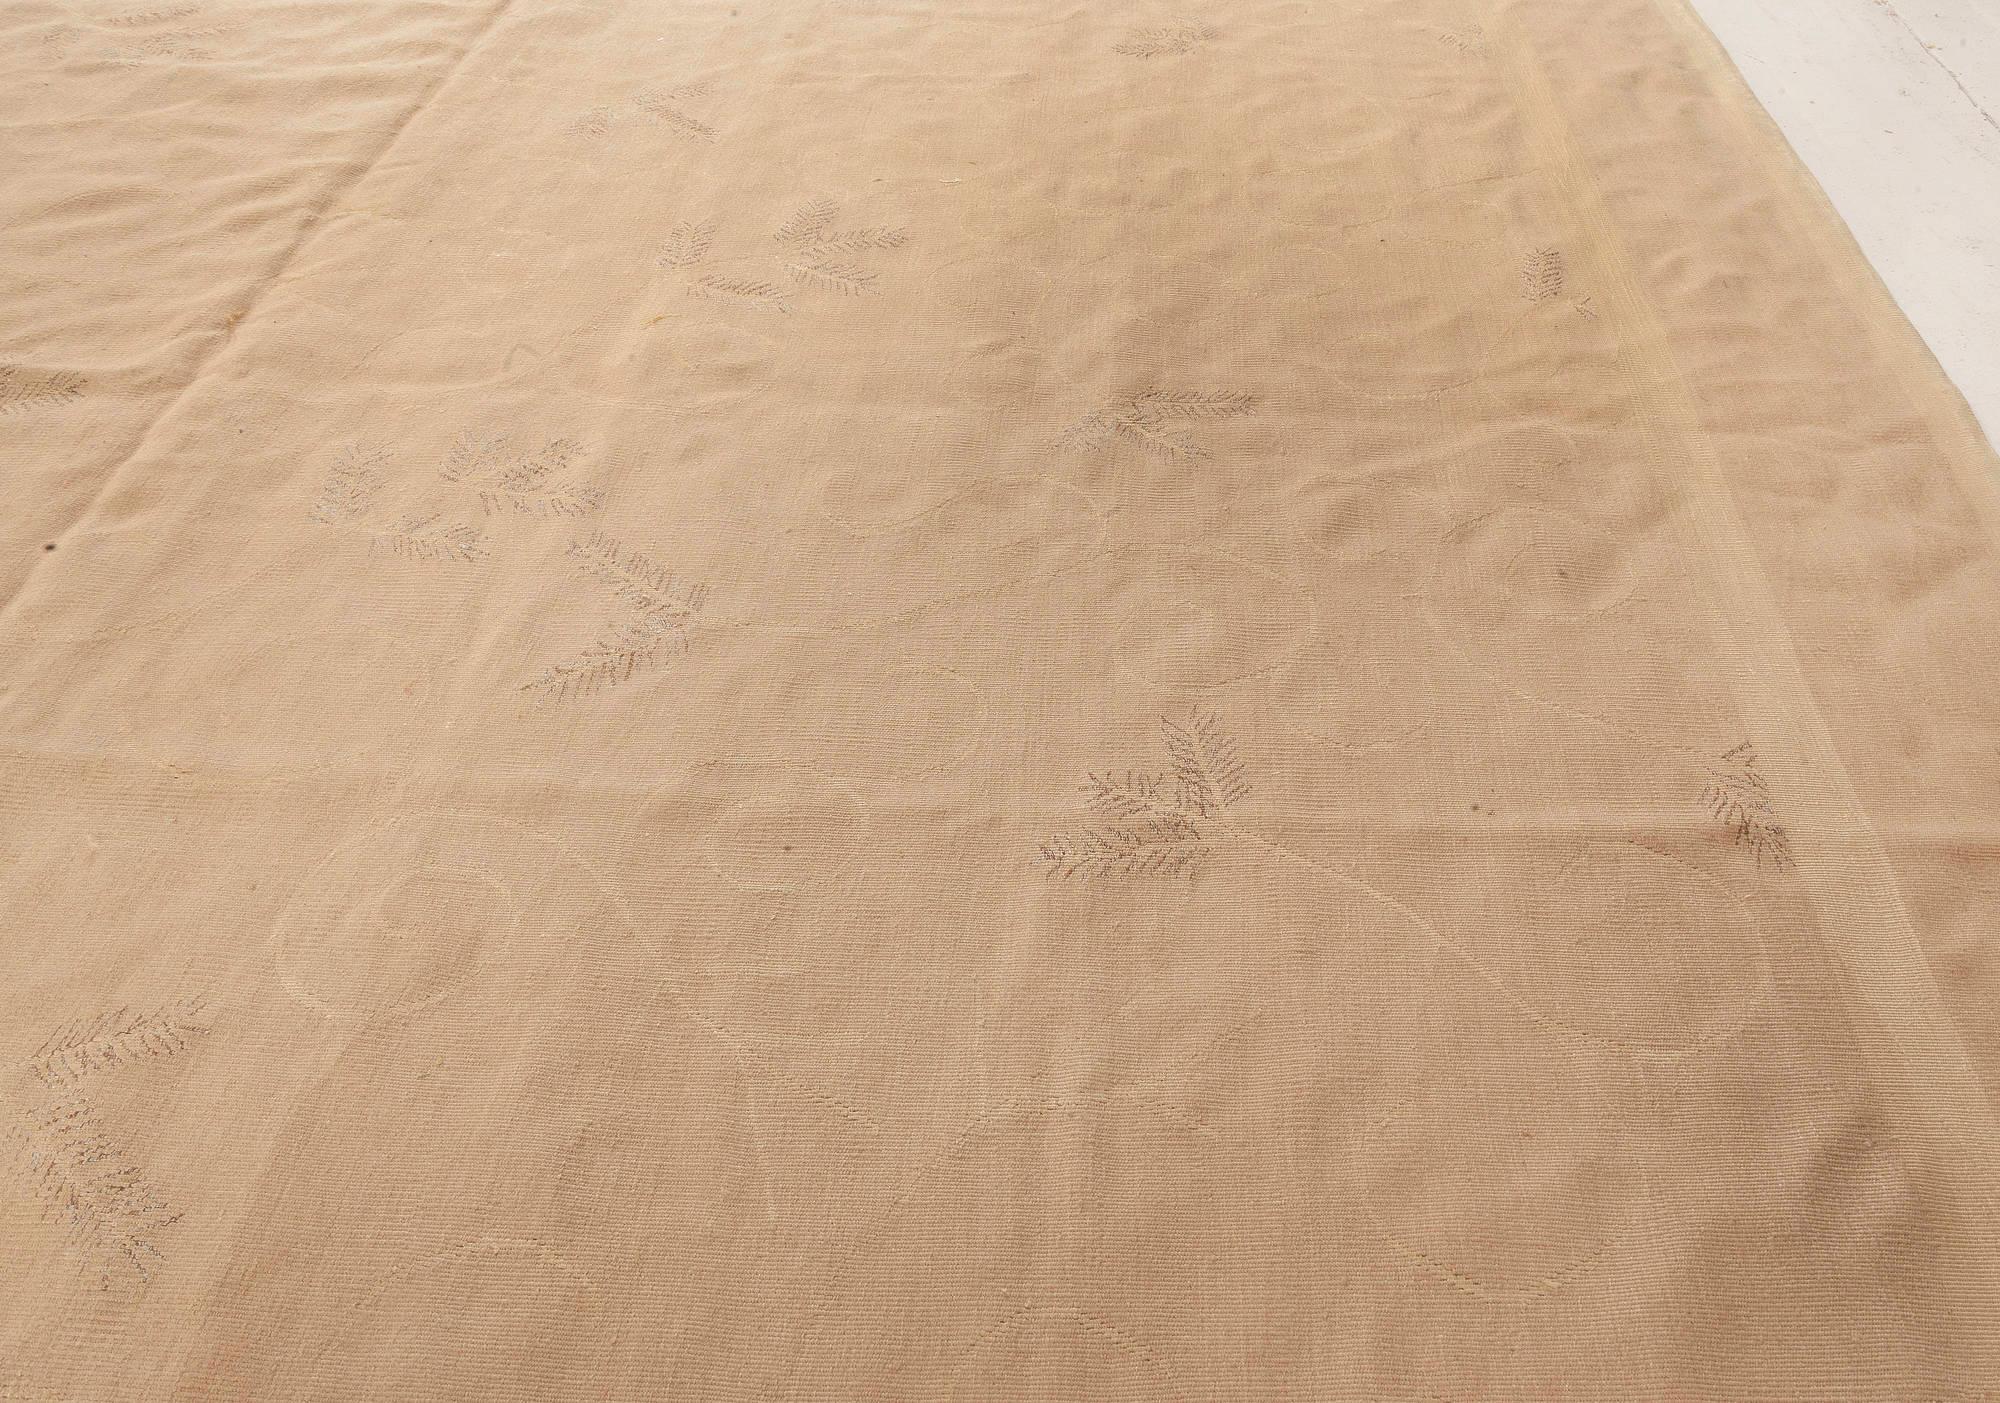 Moderner Aubusson-Teppich aus handgefertigter Wolle von Eric Cohler von Doris Leslie Blau
Größe: 8'9